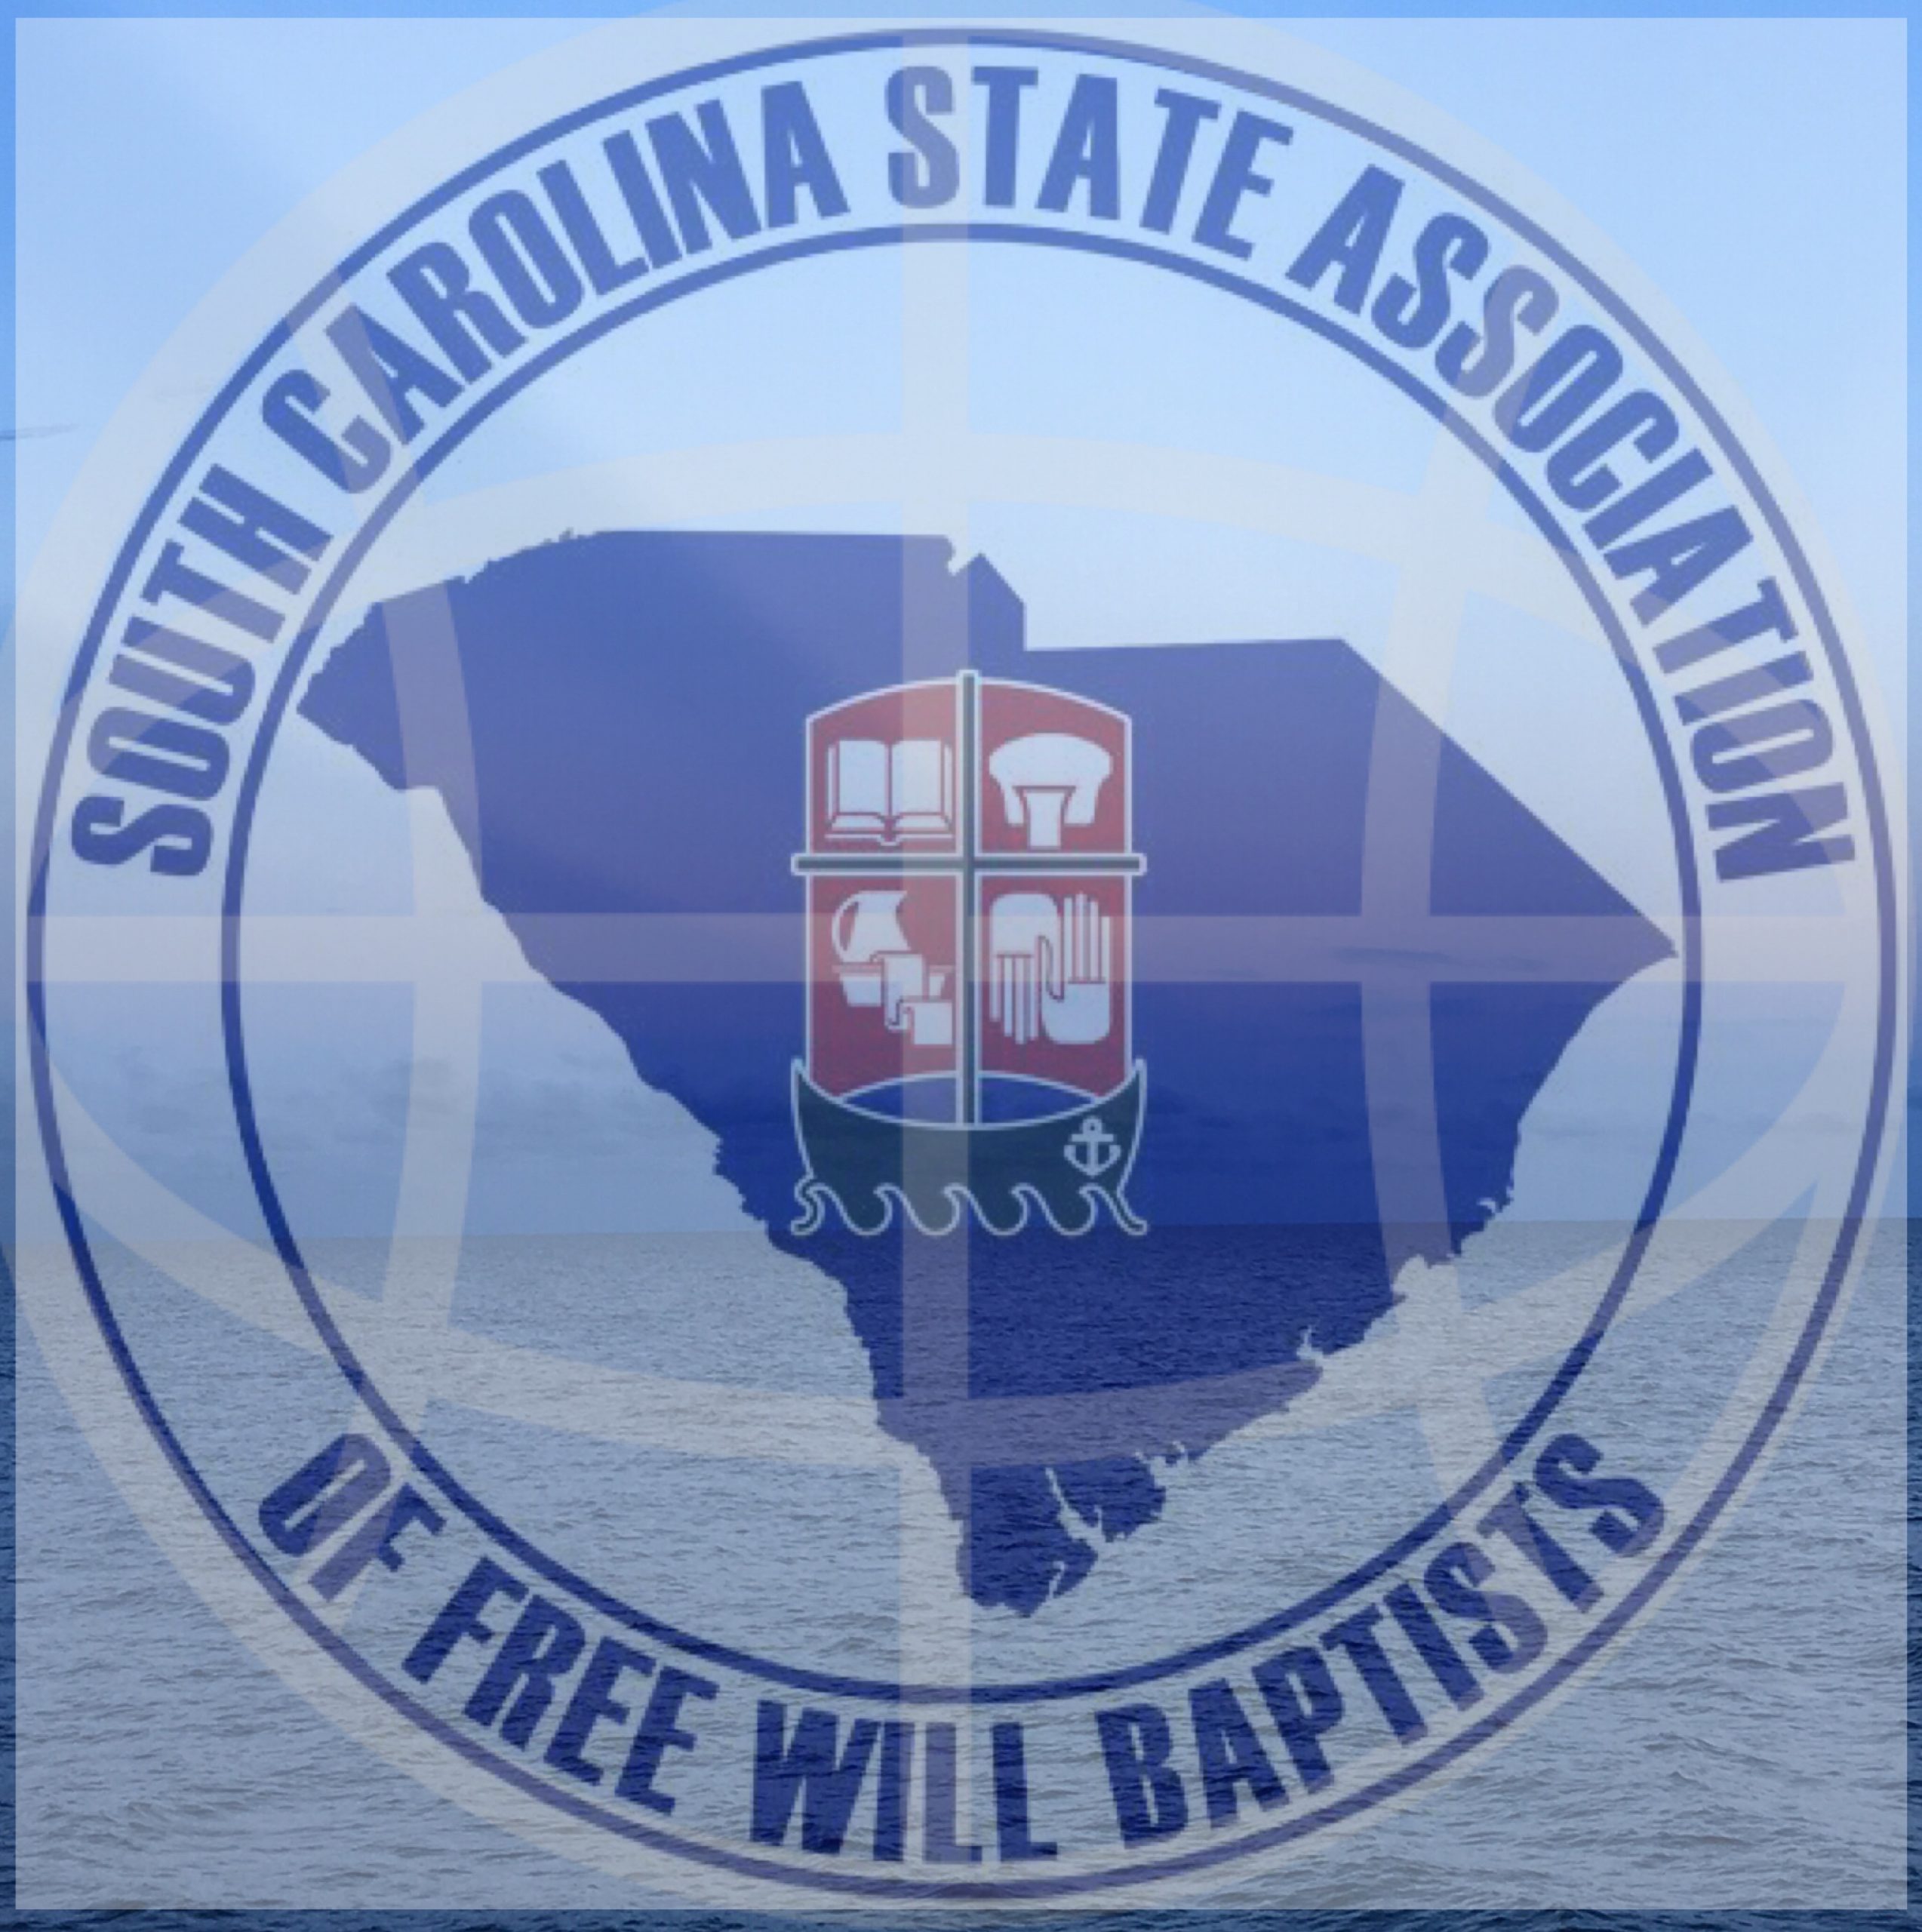 South Carolina Free Will Baptist